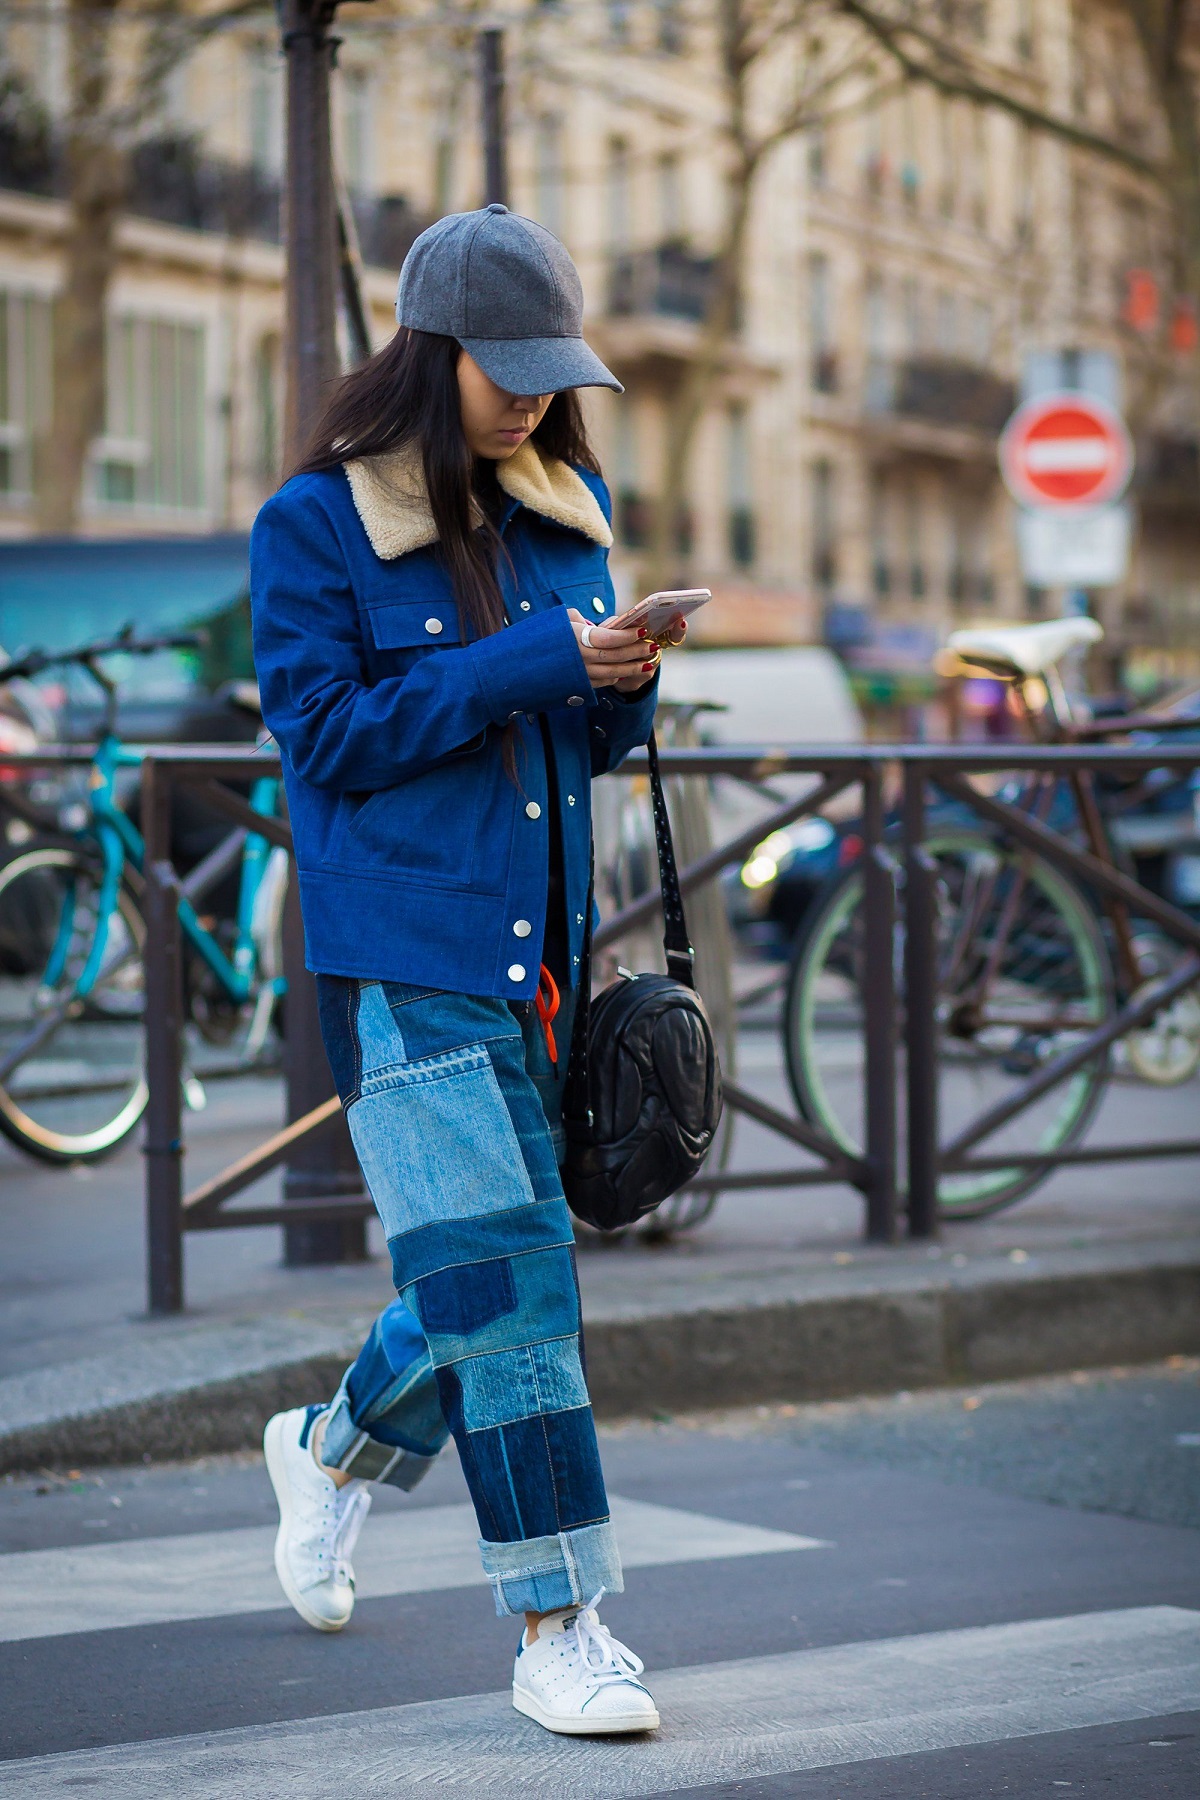 comment porter jean patchwork sans faire fashion faux pas